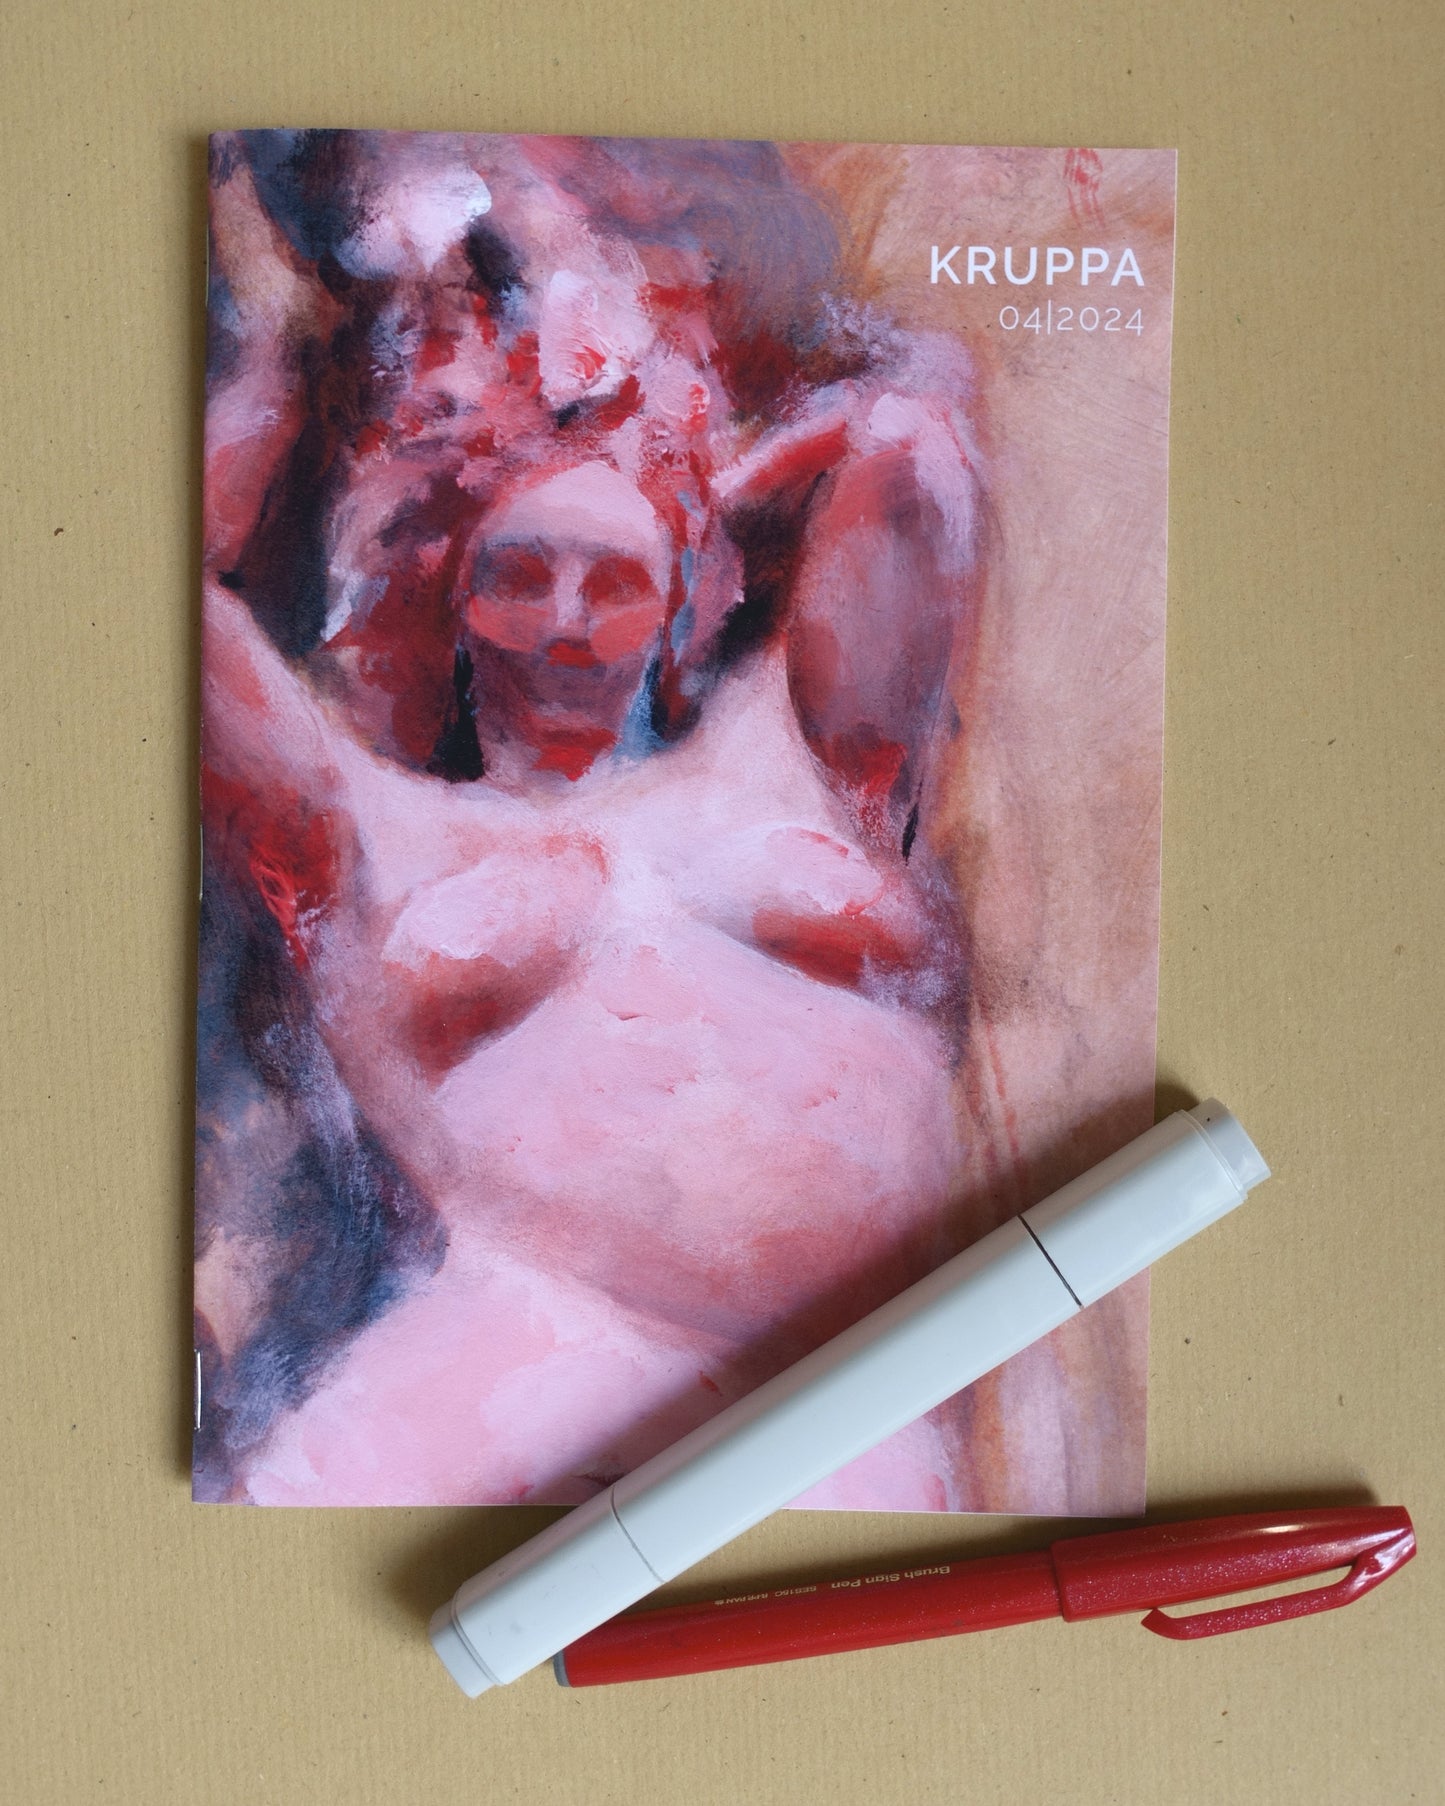 Catalogue: KRUPPA 04|2024 (12 artworks)